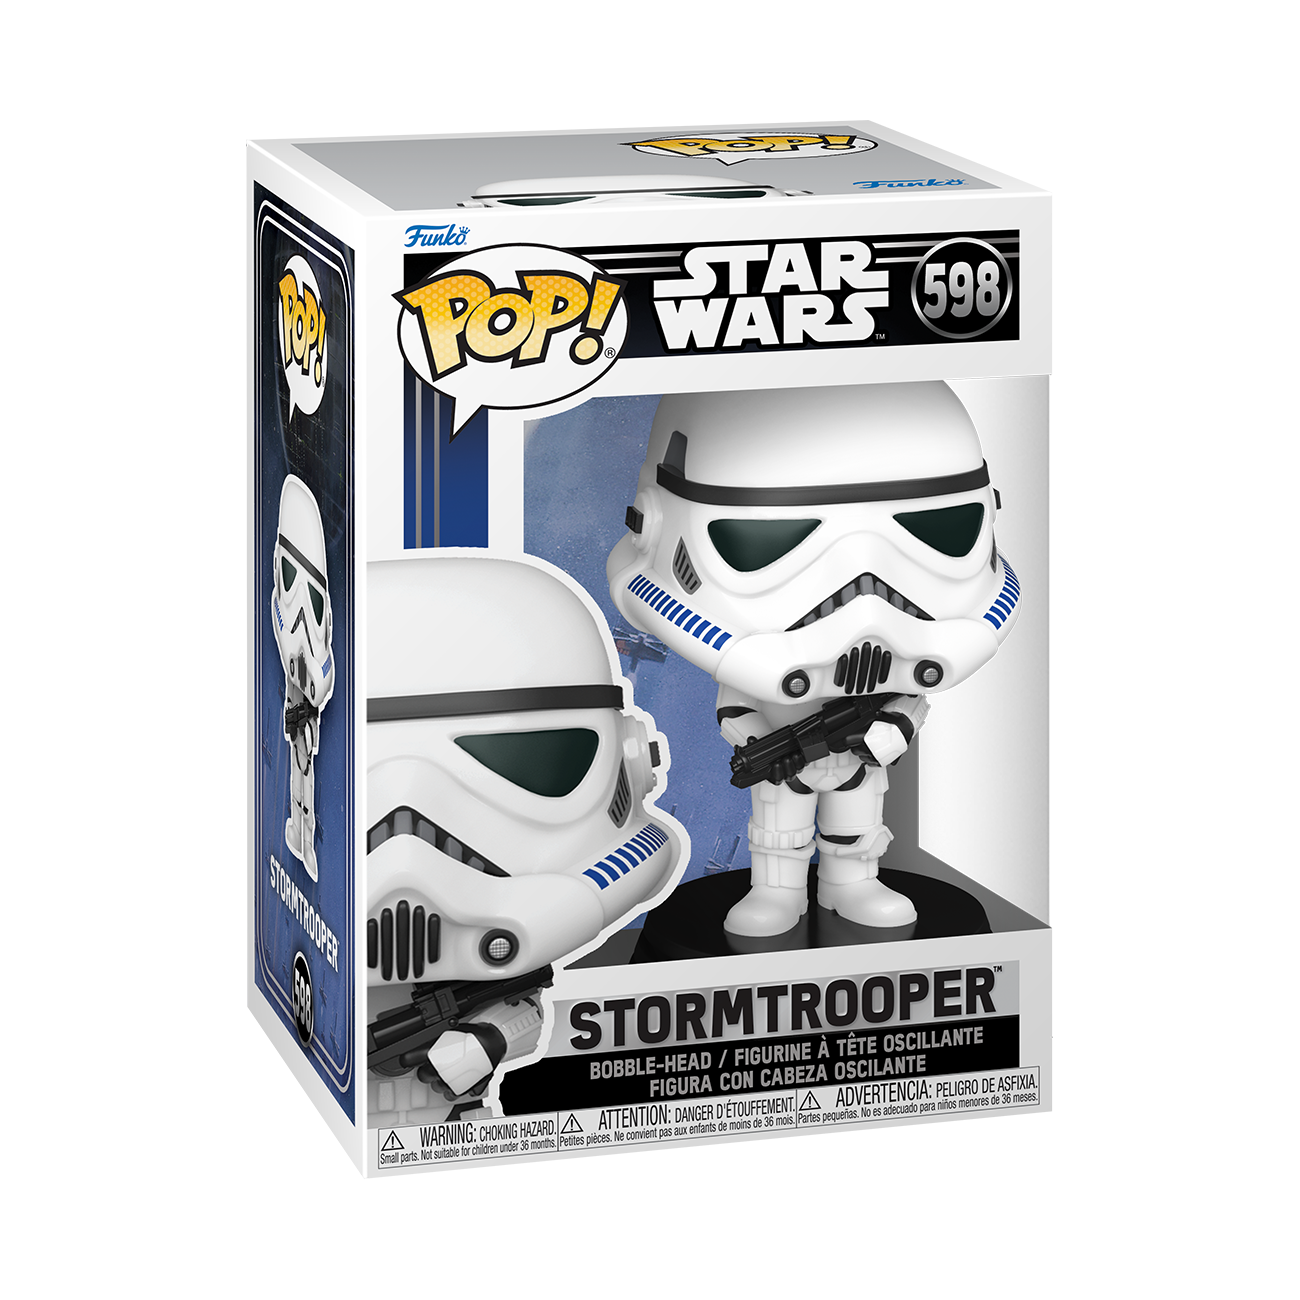 Funko Pop - Star Wars - Stormtrooper (Vinyl Figure 598)